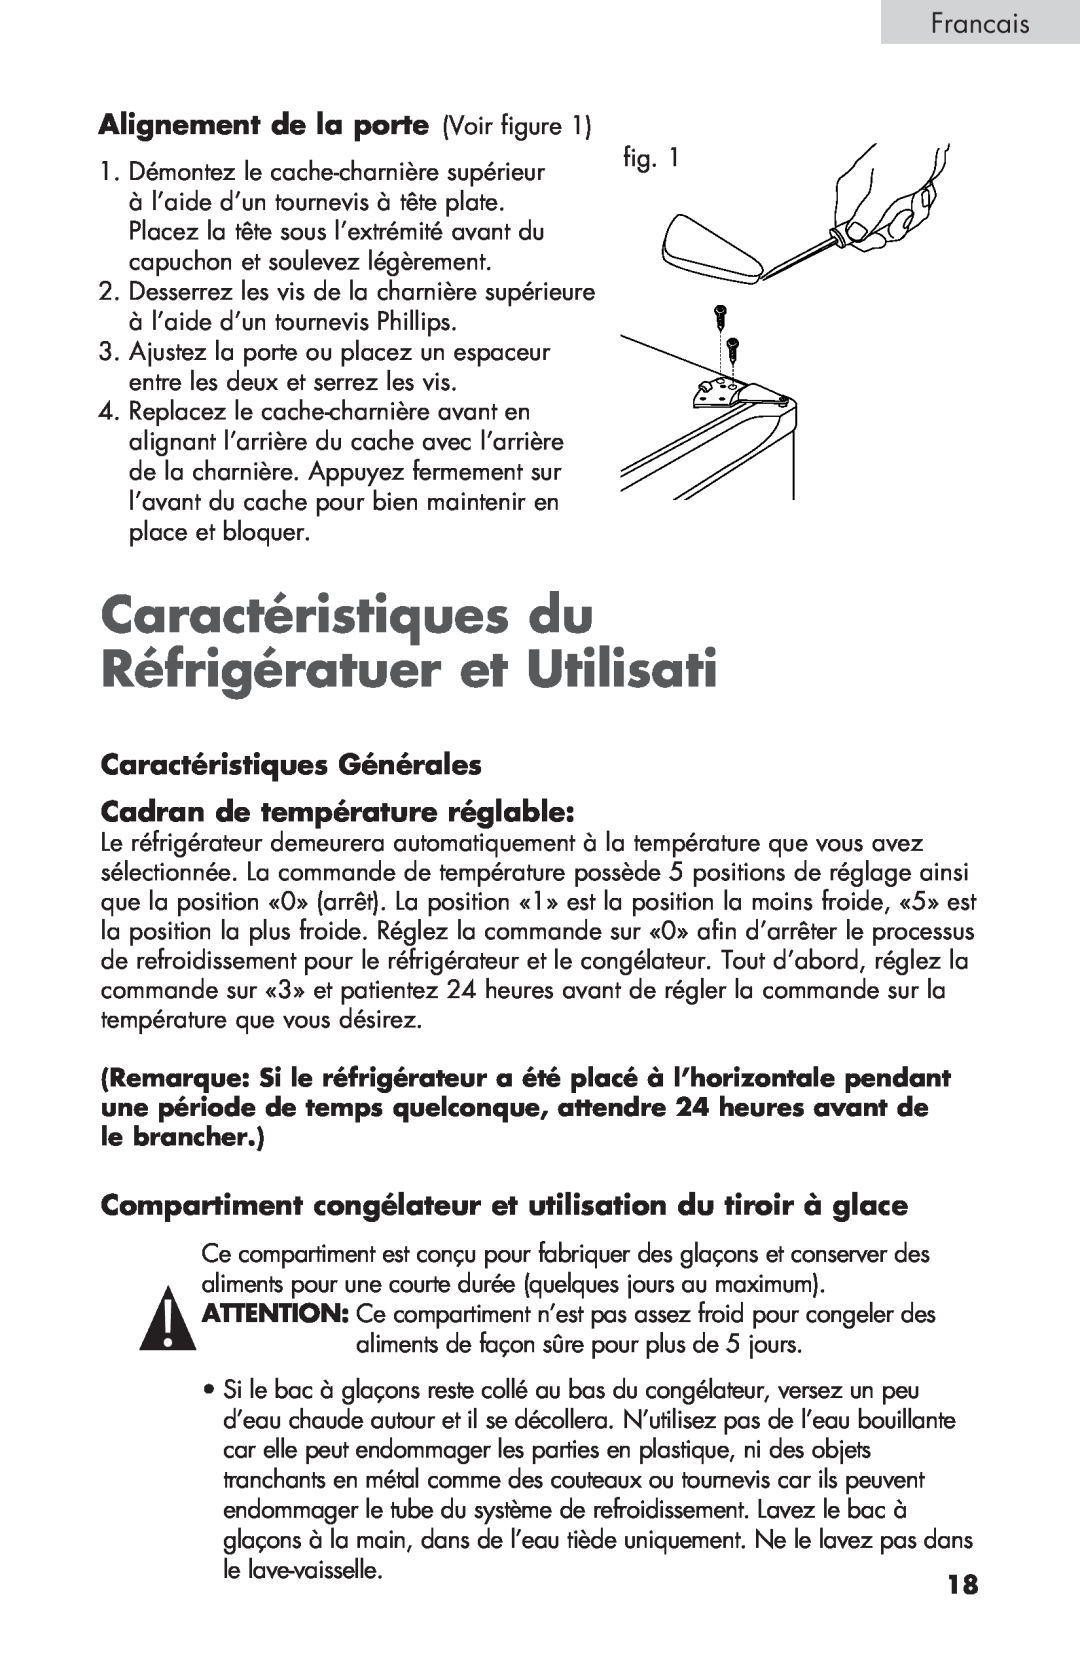 Haier BCF27B manual Caractéristiques du Réfrigératuer et Utilisati, Alignement de la porte Voir figure, Francais 